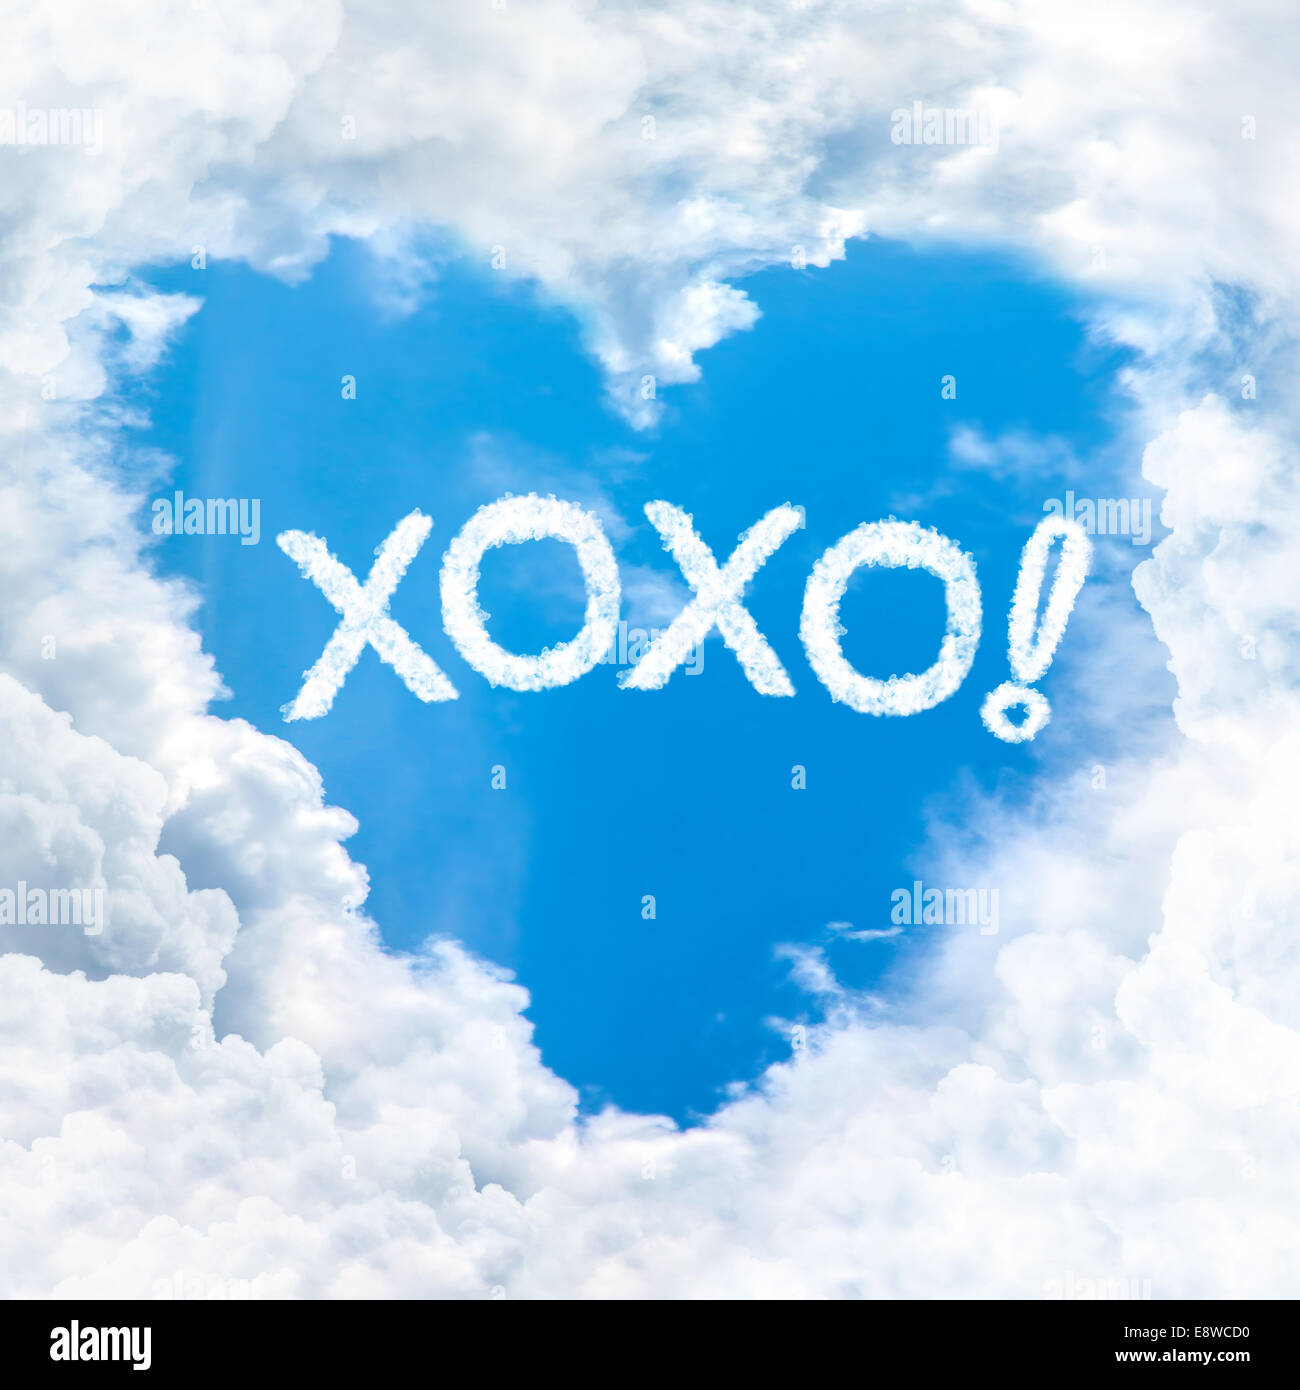 Bisous ou kiss and hug mot sur ciel bleu à l'intérieur coeur forme des nuages Banque D'Images